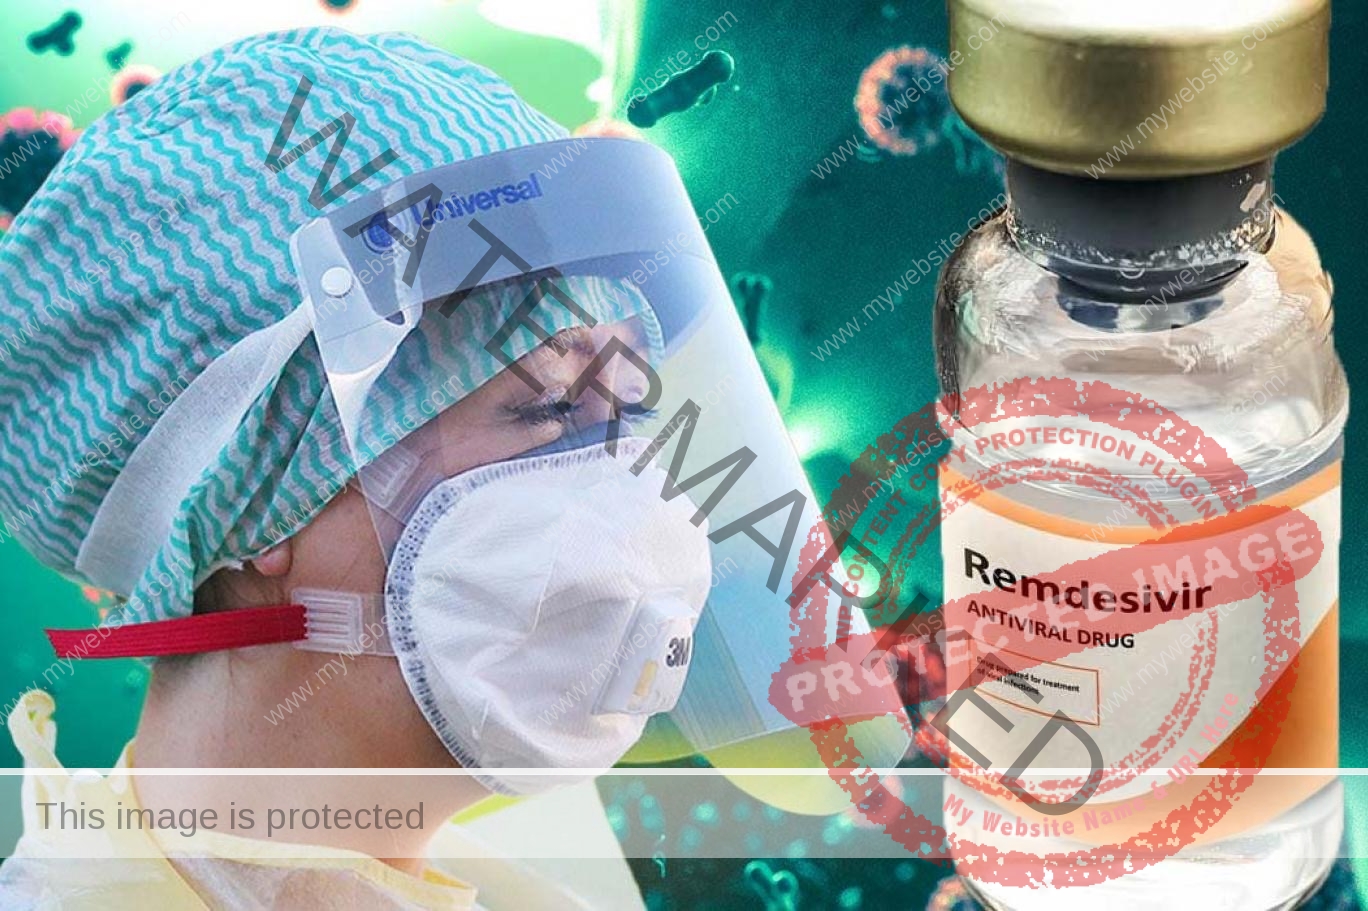 الصحة العالمية : تحذر من استخدام ريمديسيفير لعلاج مرضى كورونا